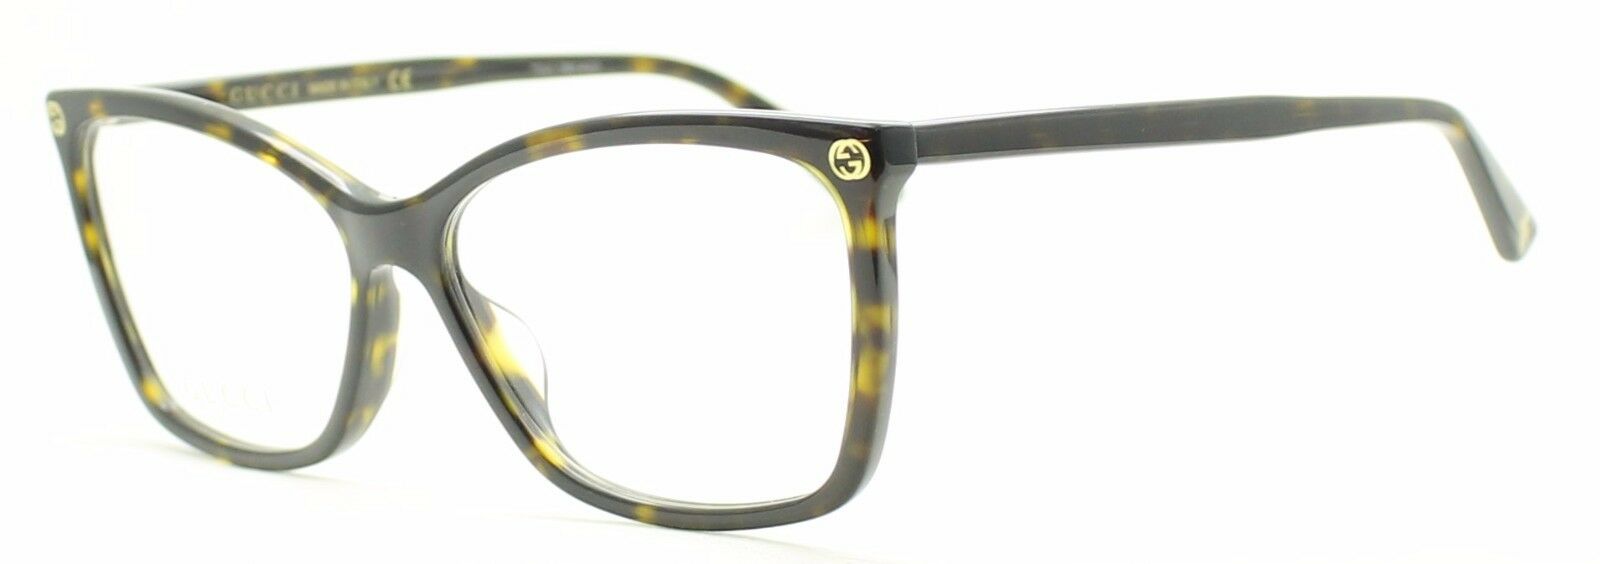 GUCCI GG 0025O 002 Eyewear FRAMES NEW Glasses RX Optical Eyeglasses ITALY - BNIB